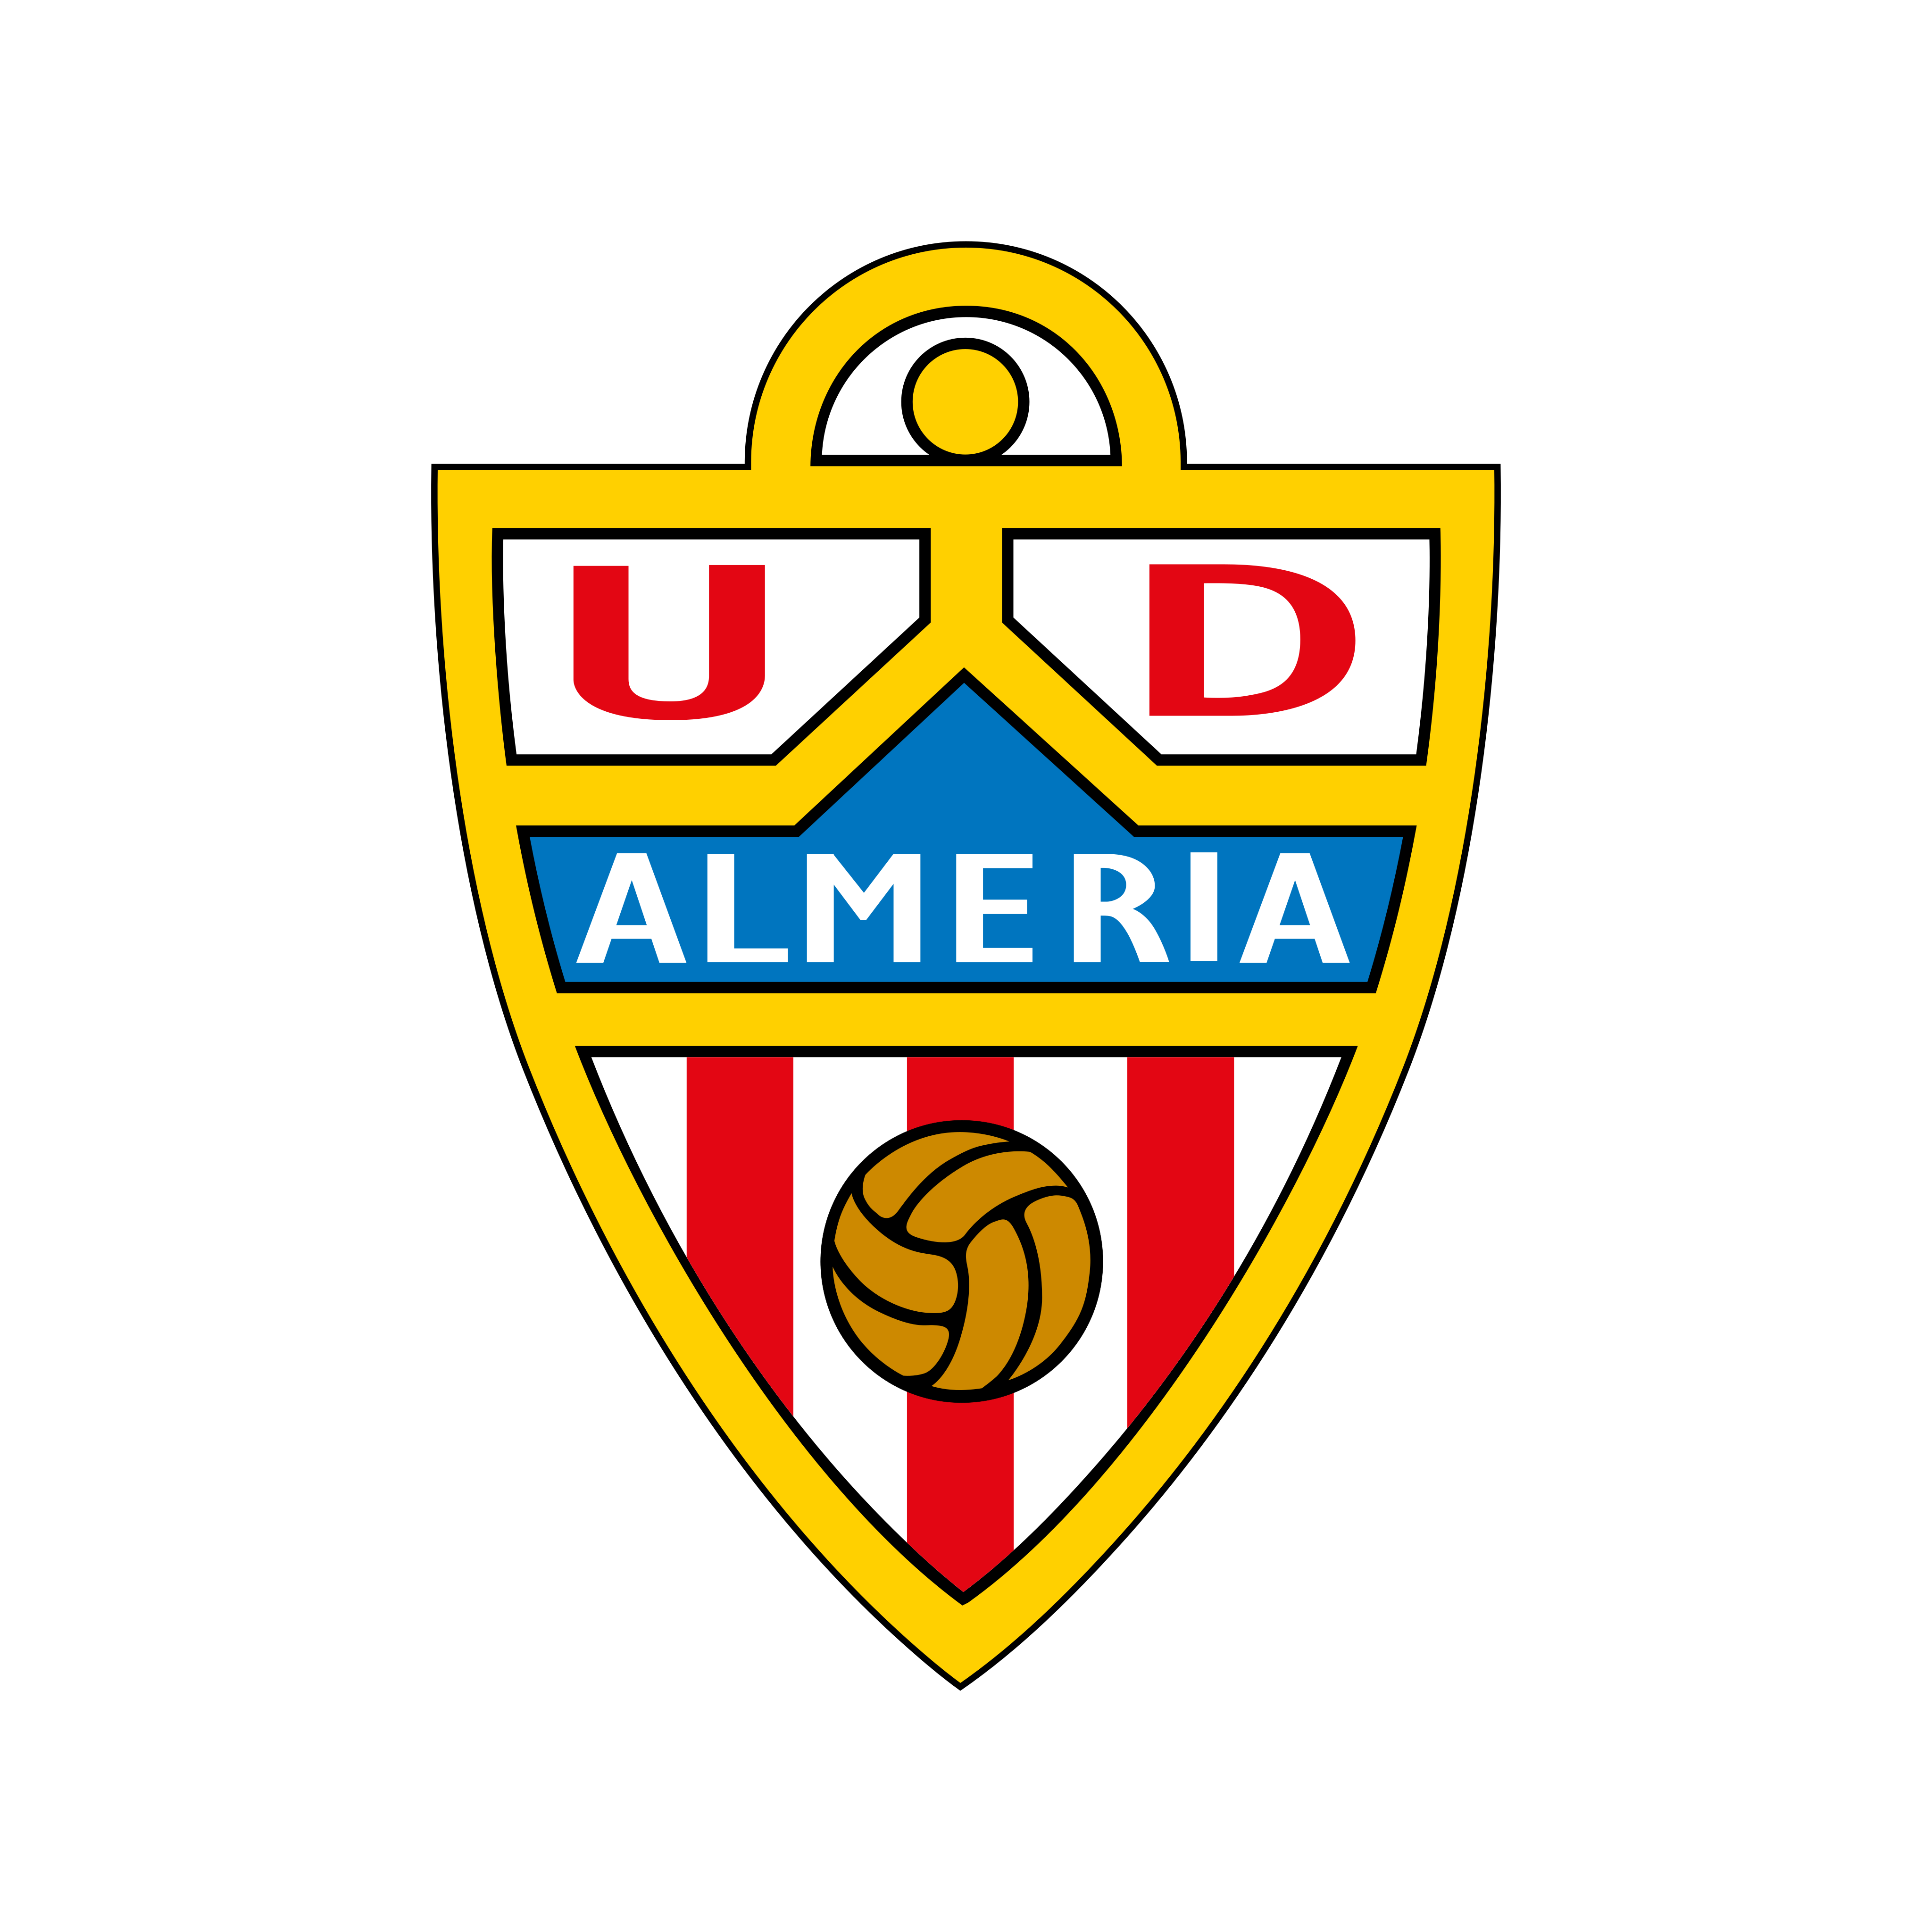 ud almeria logo 0 - UD Almeria Logo